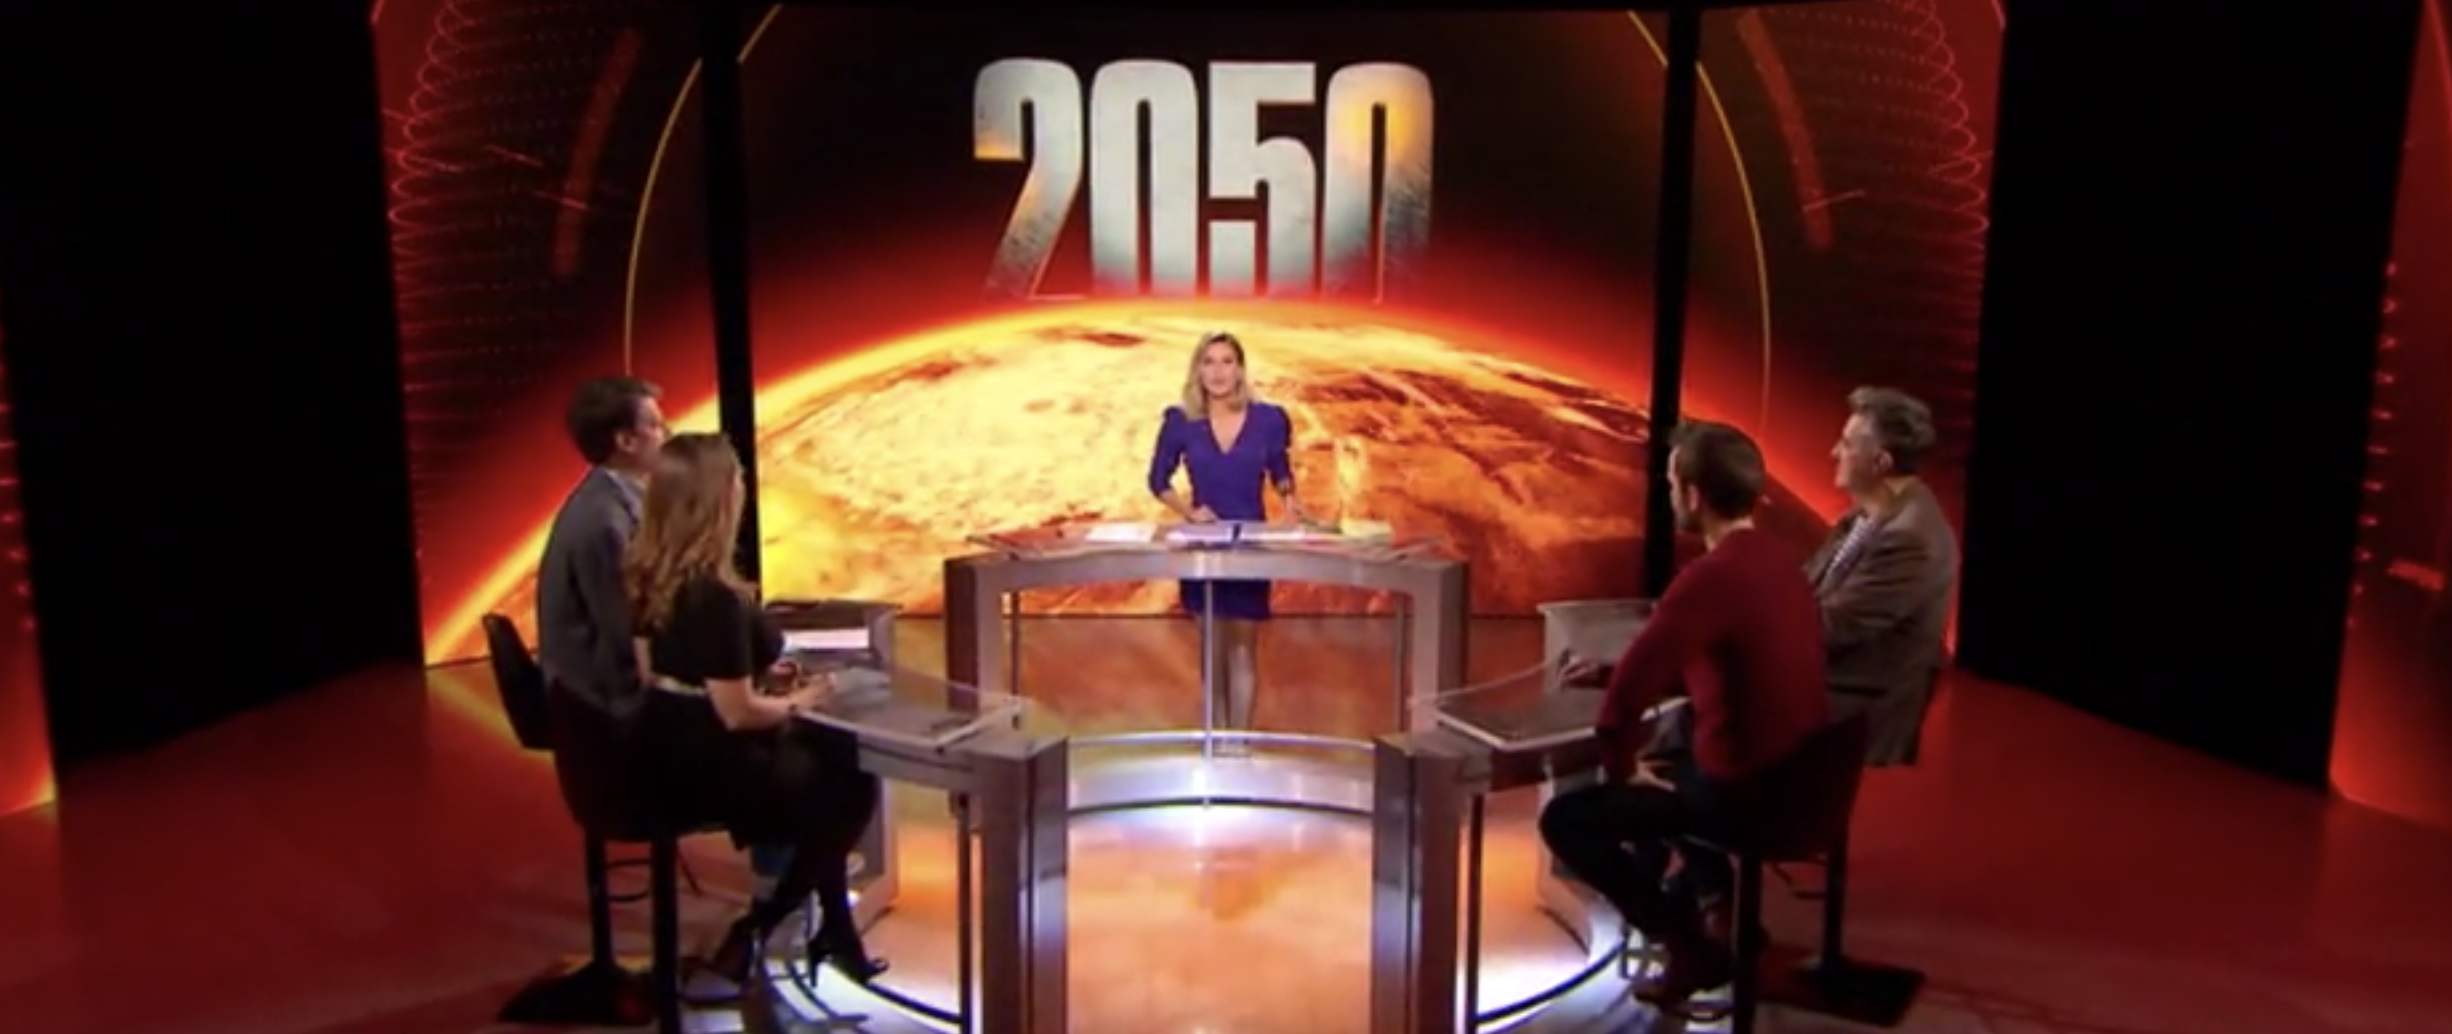 2050 - Alerte climat - W9 - documentaire - Stéphanie Renouvin - débat